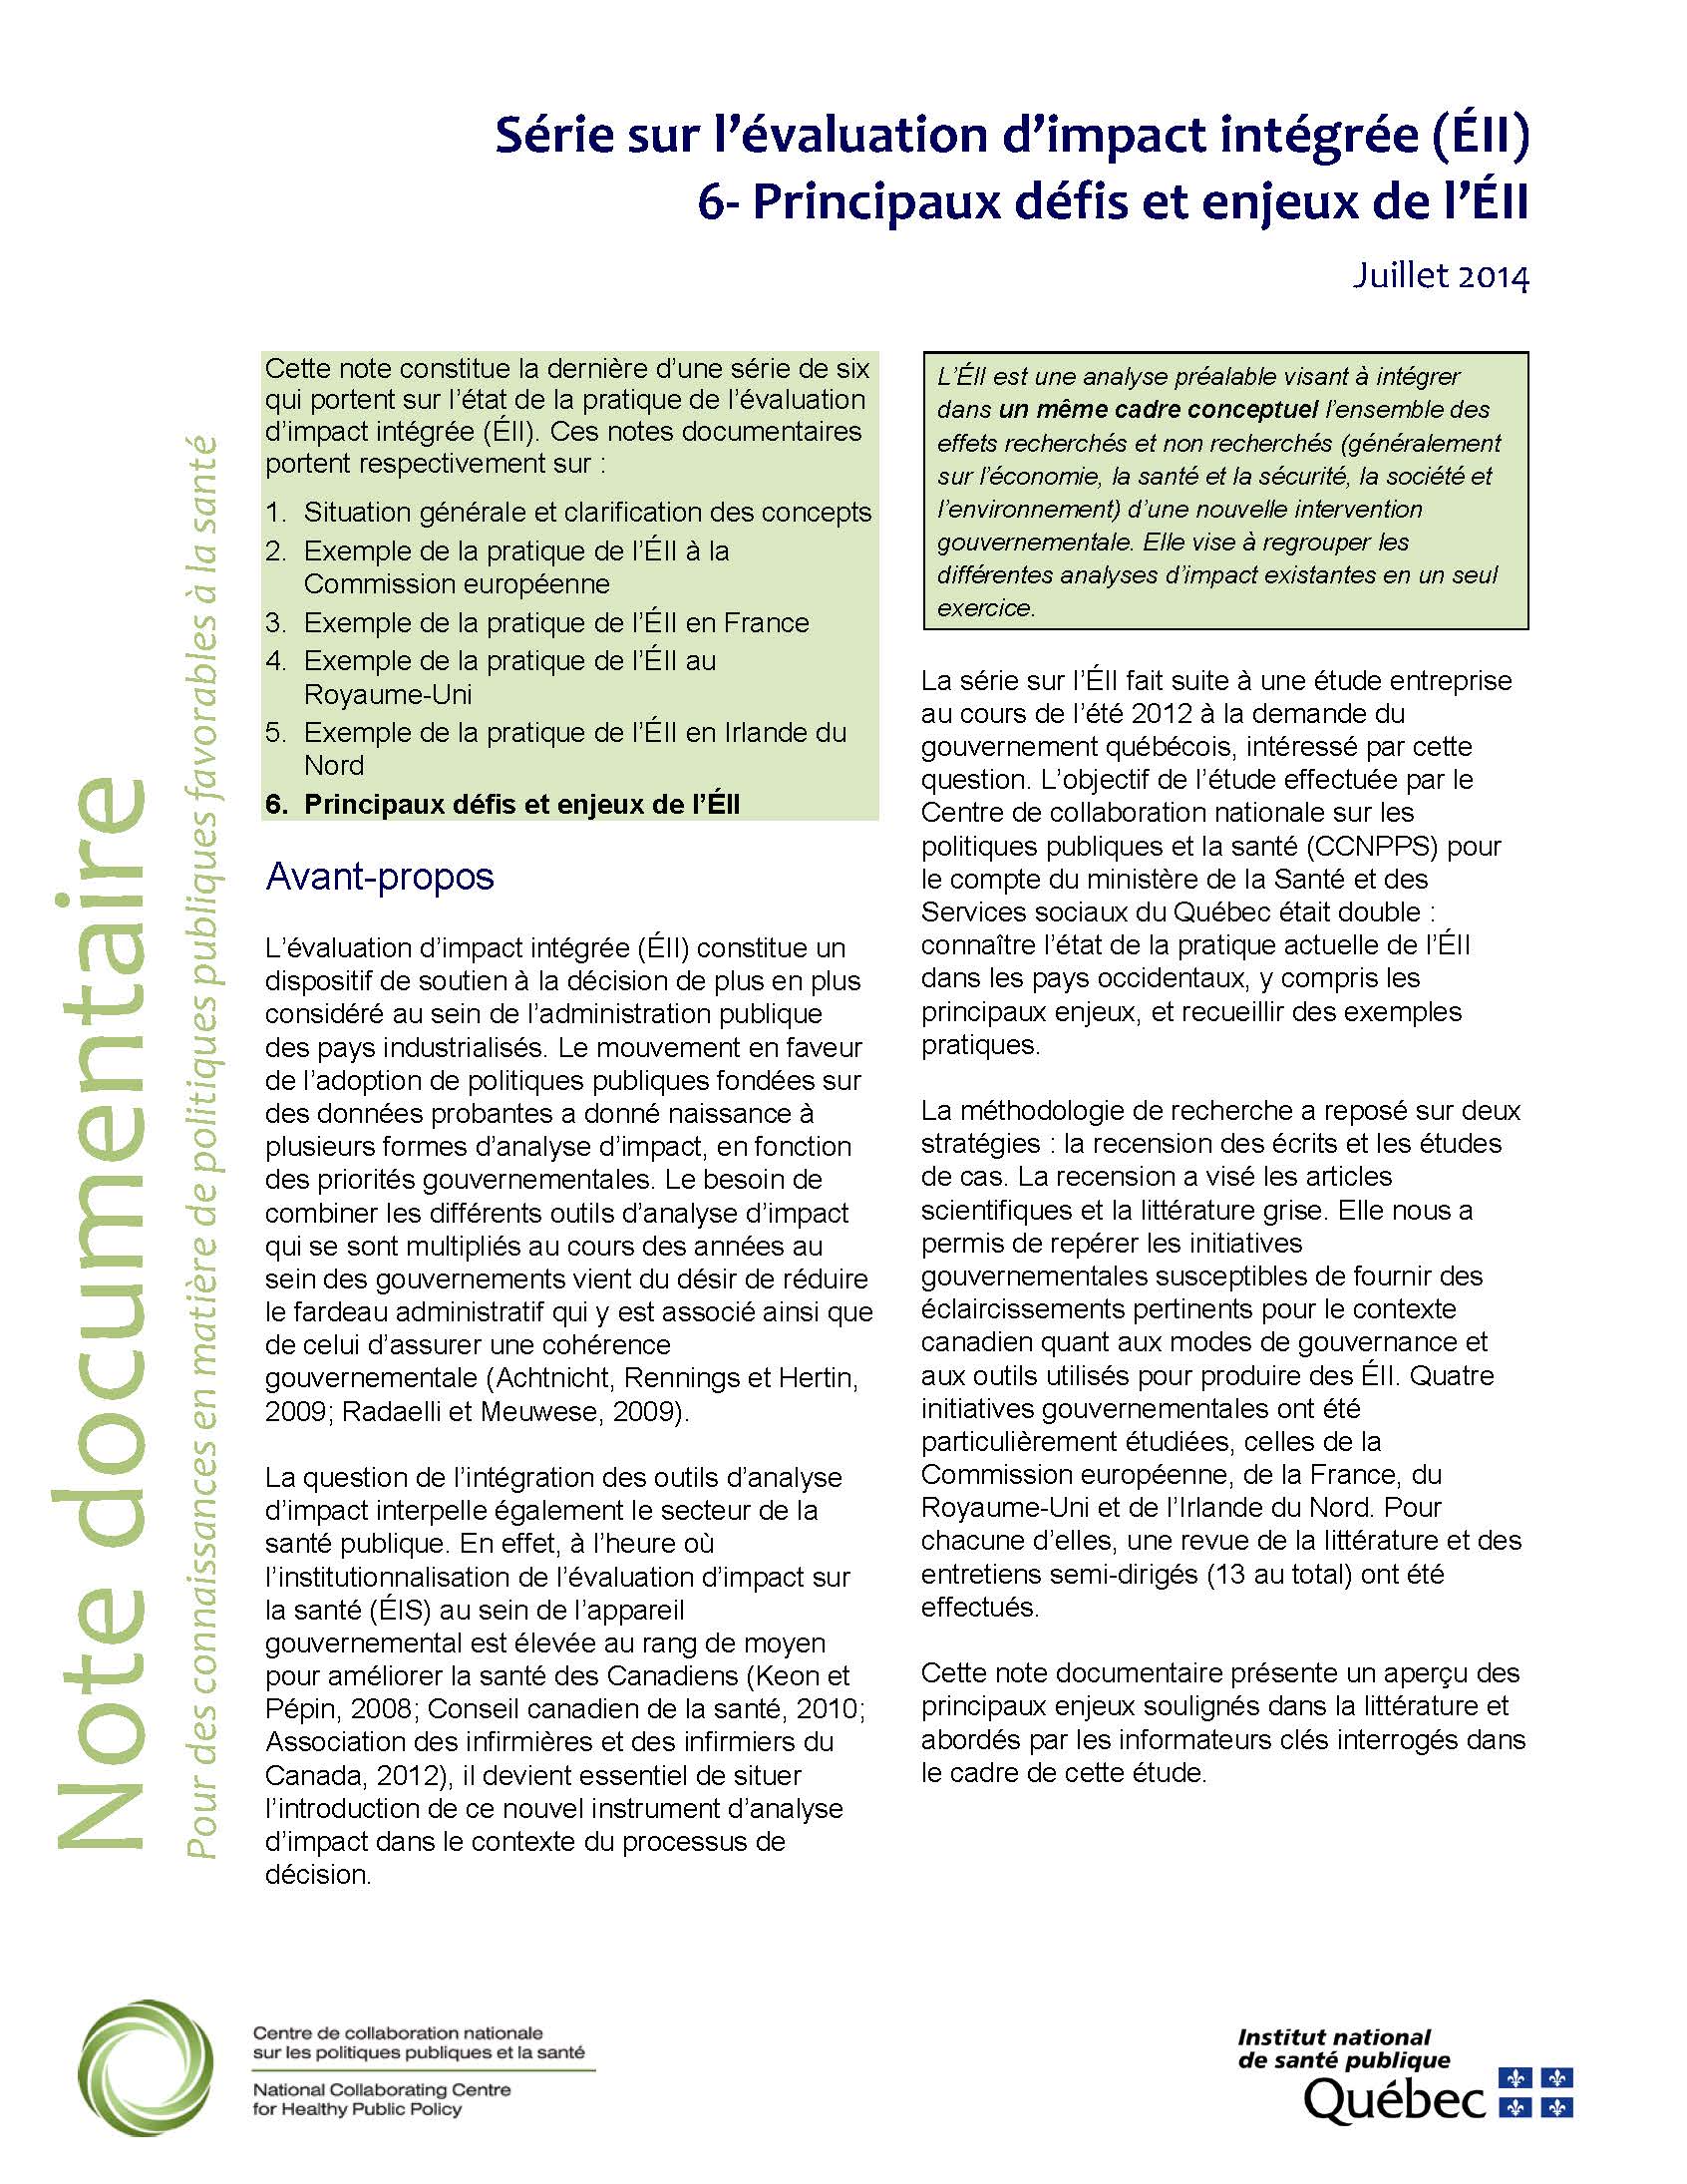 Série sur l’évaluation d’impact intégrée (ÉII). 6-Principaux défis et enjeux de l’ÉII